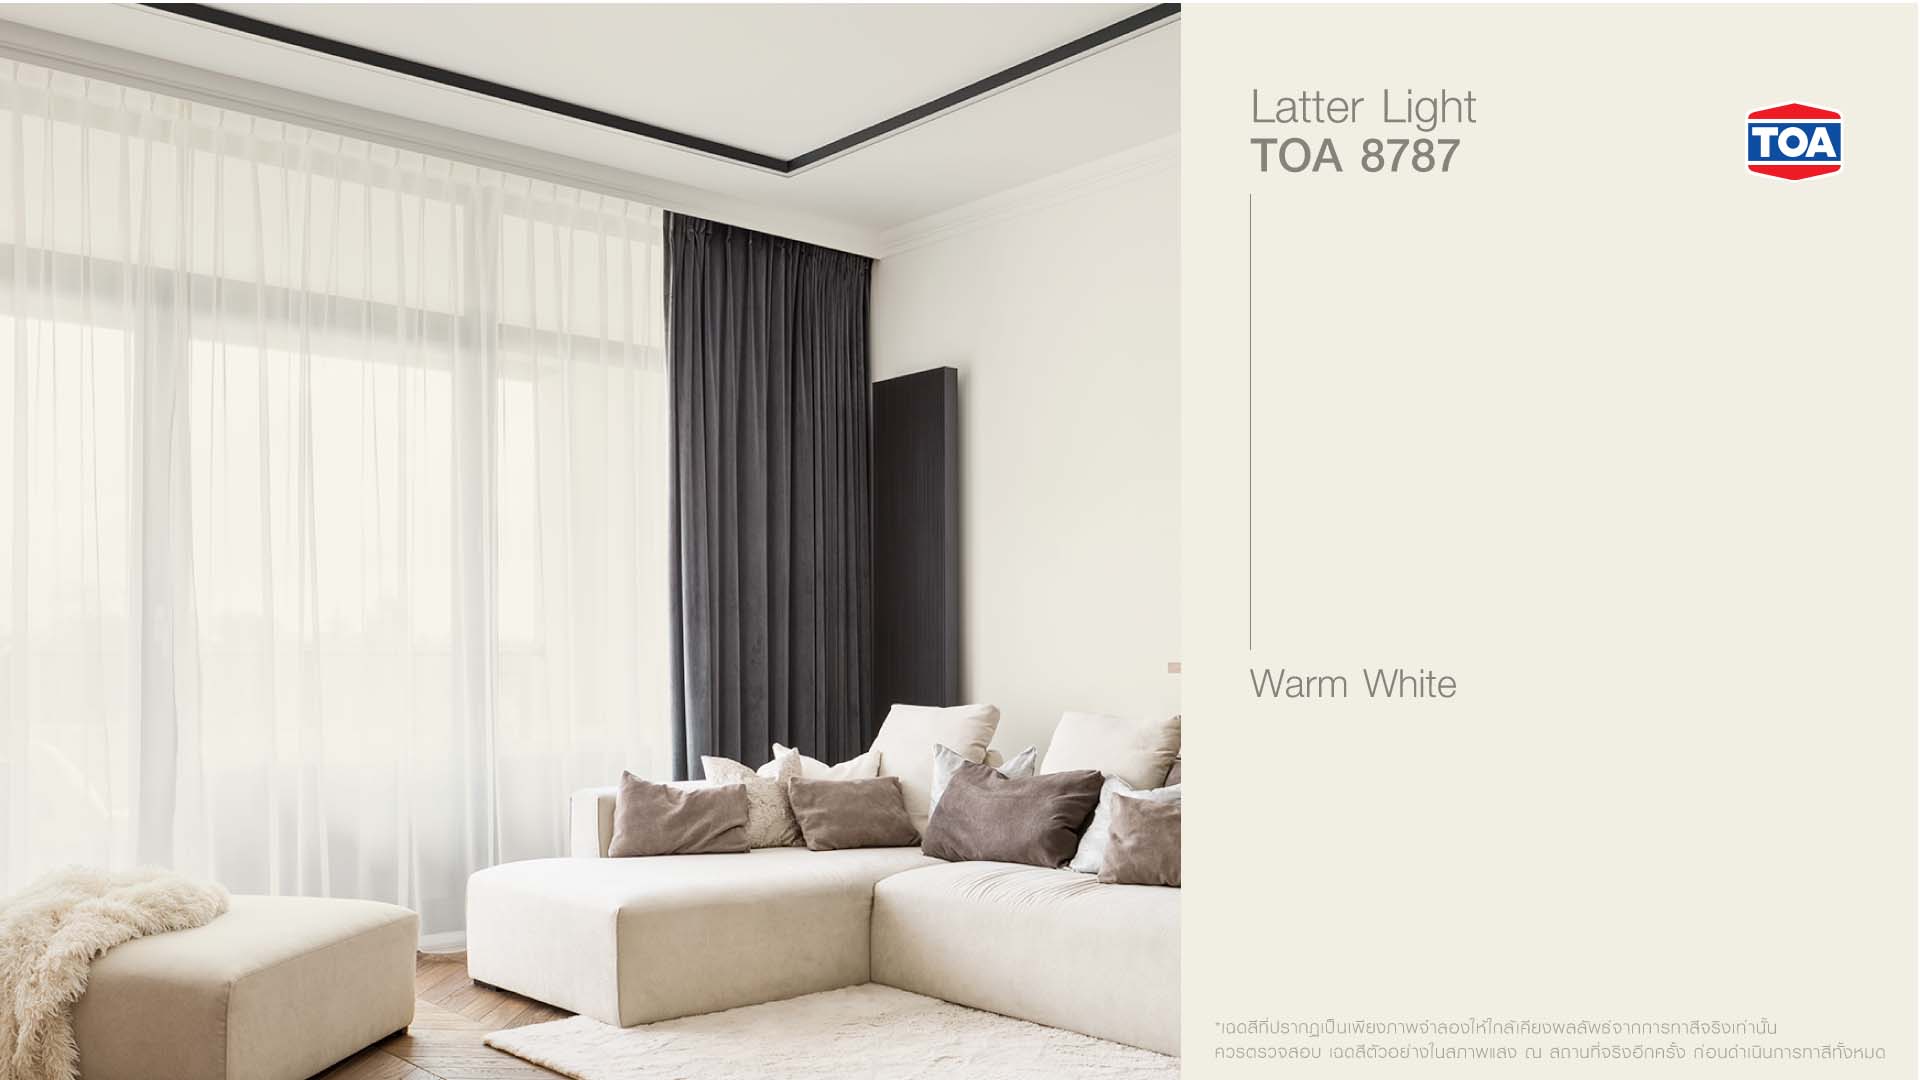 ตัวอย่างสีทาบ้านภายใน เฉดสีขาว โทนเสว่าง TOA 8787